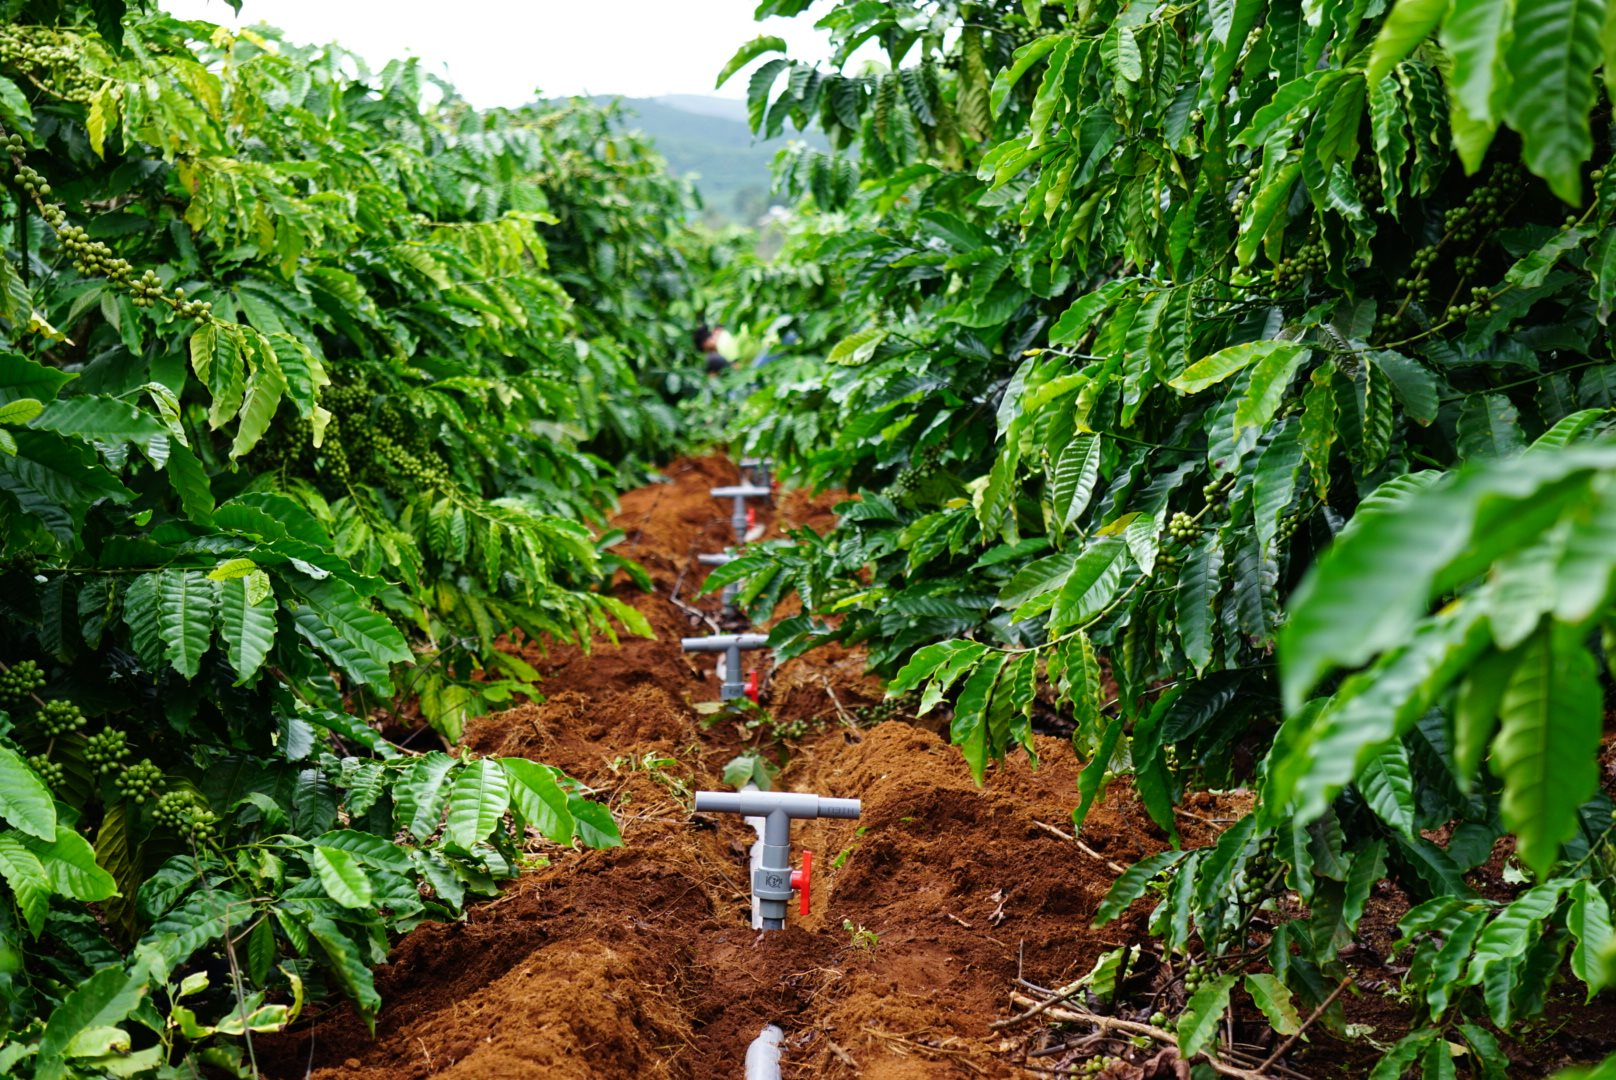 Tưới nước tiết kiệm  Giải pháp nâng cao hiệu quả kinh tế môi trường trong  sản xuất cà phê bền vững ở Tây Nguyên  Viện Khoa Học Kỹ Thuật Nông